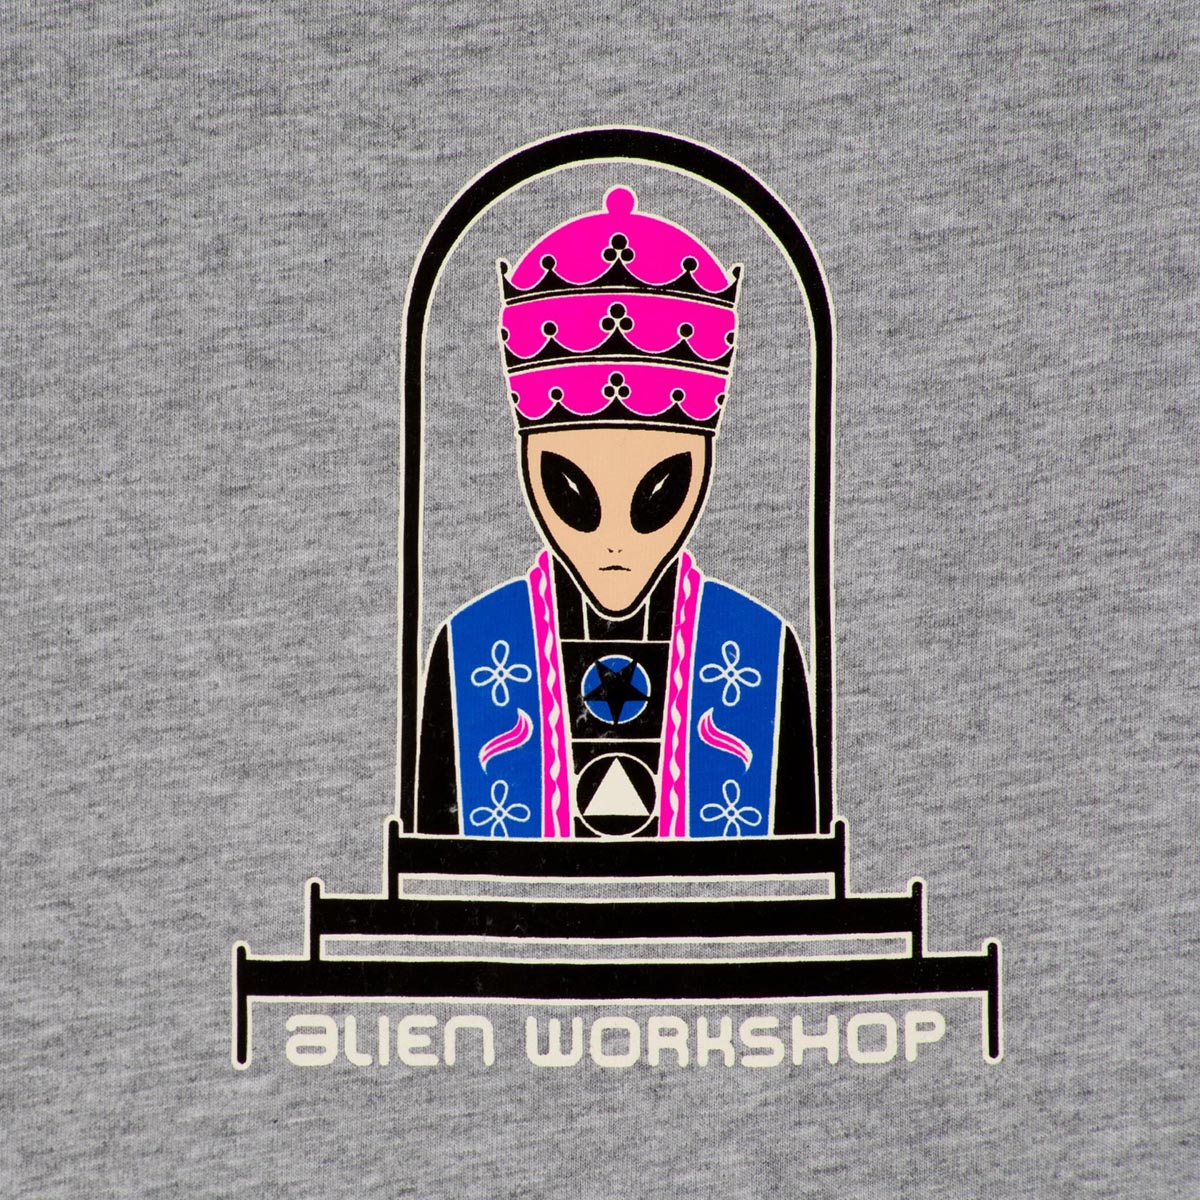 Alien Workshop Priest Long Sleeve T-Shirt - Athletic Grey image 2